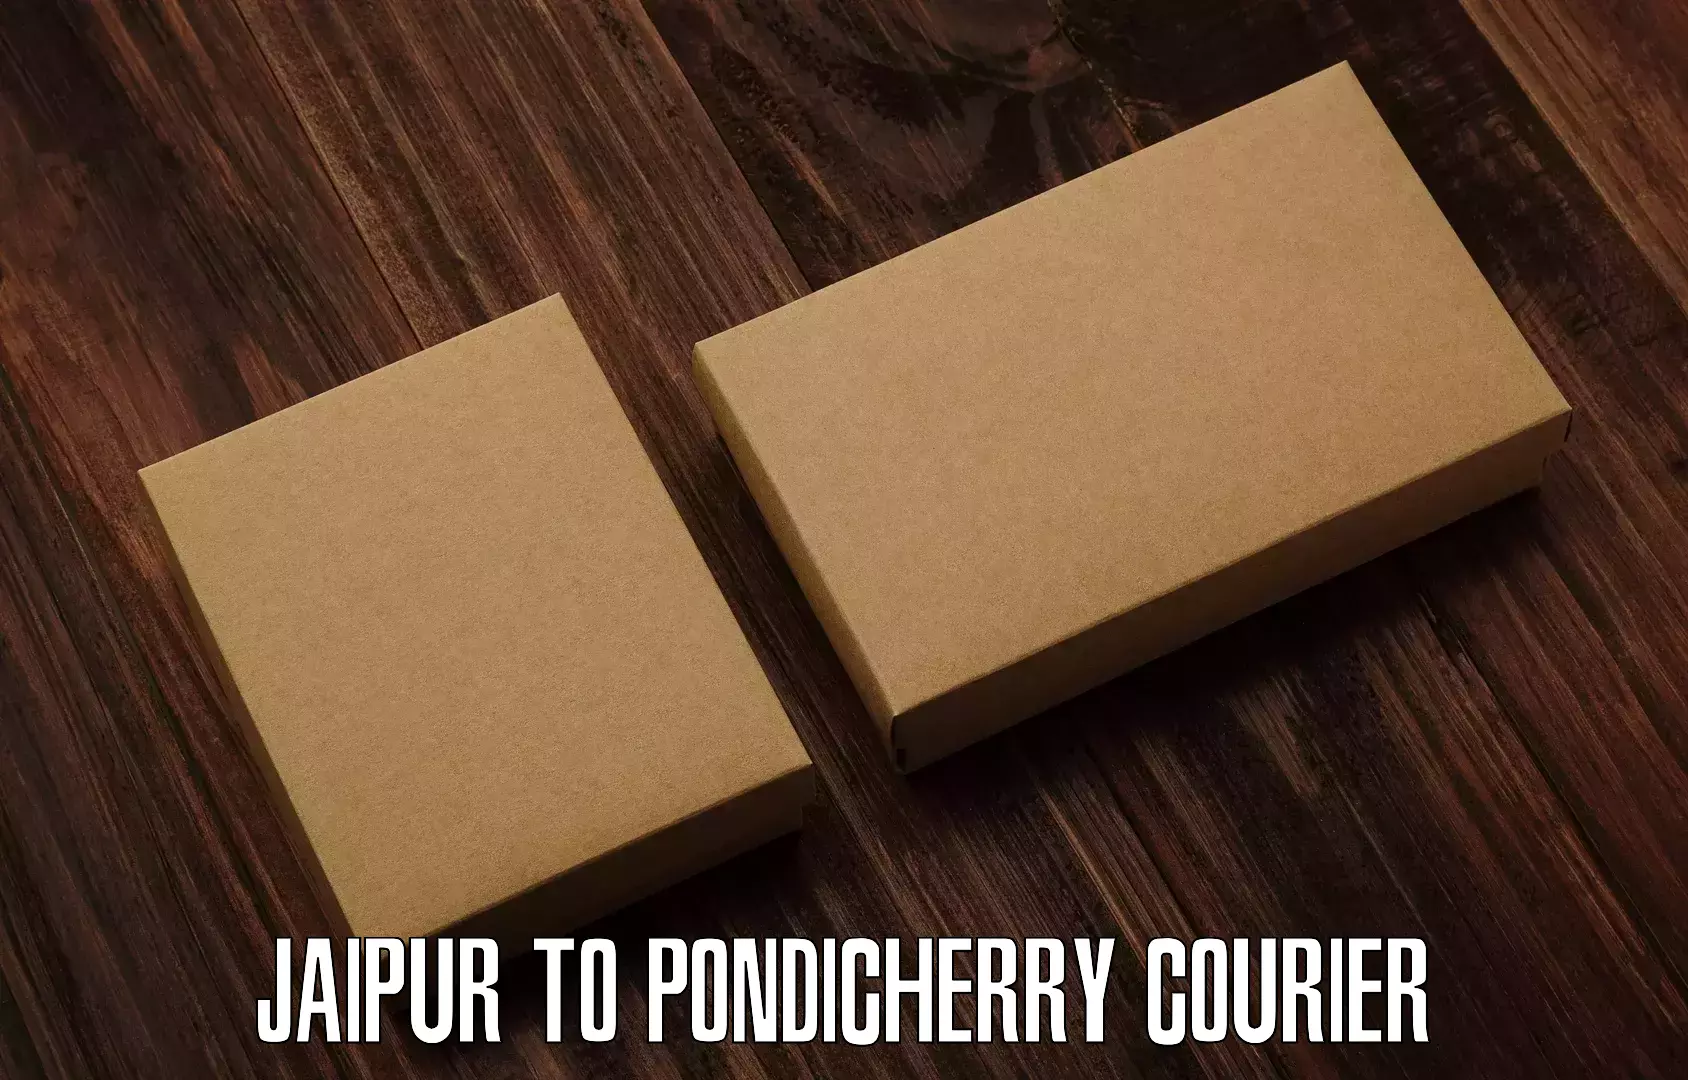 High-speed parcel service Jaipur to Pondicherry